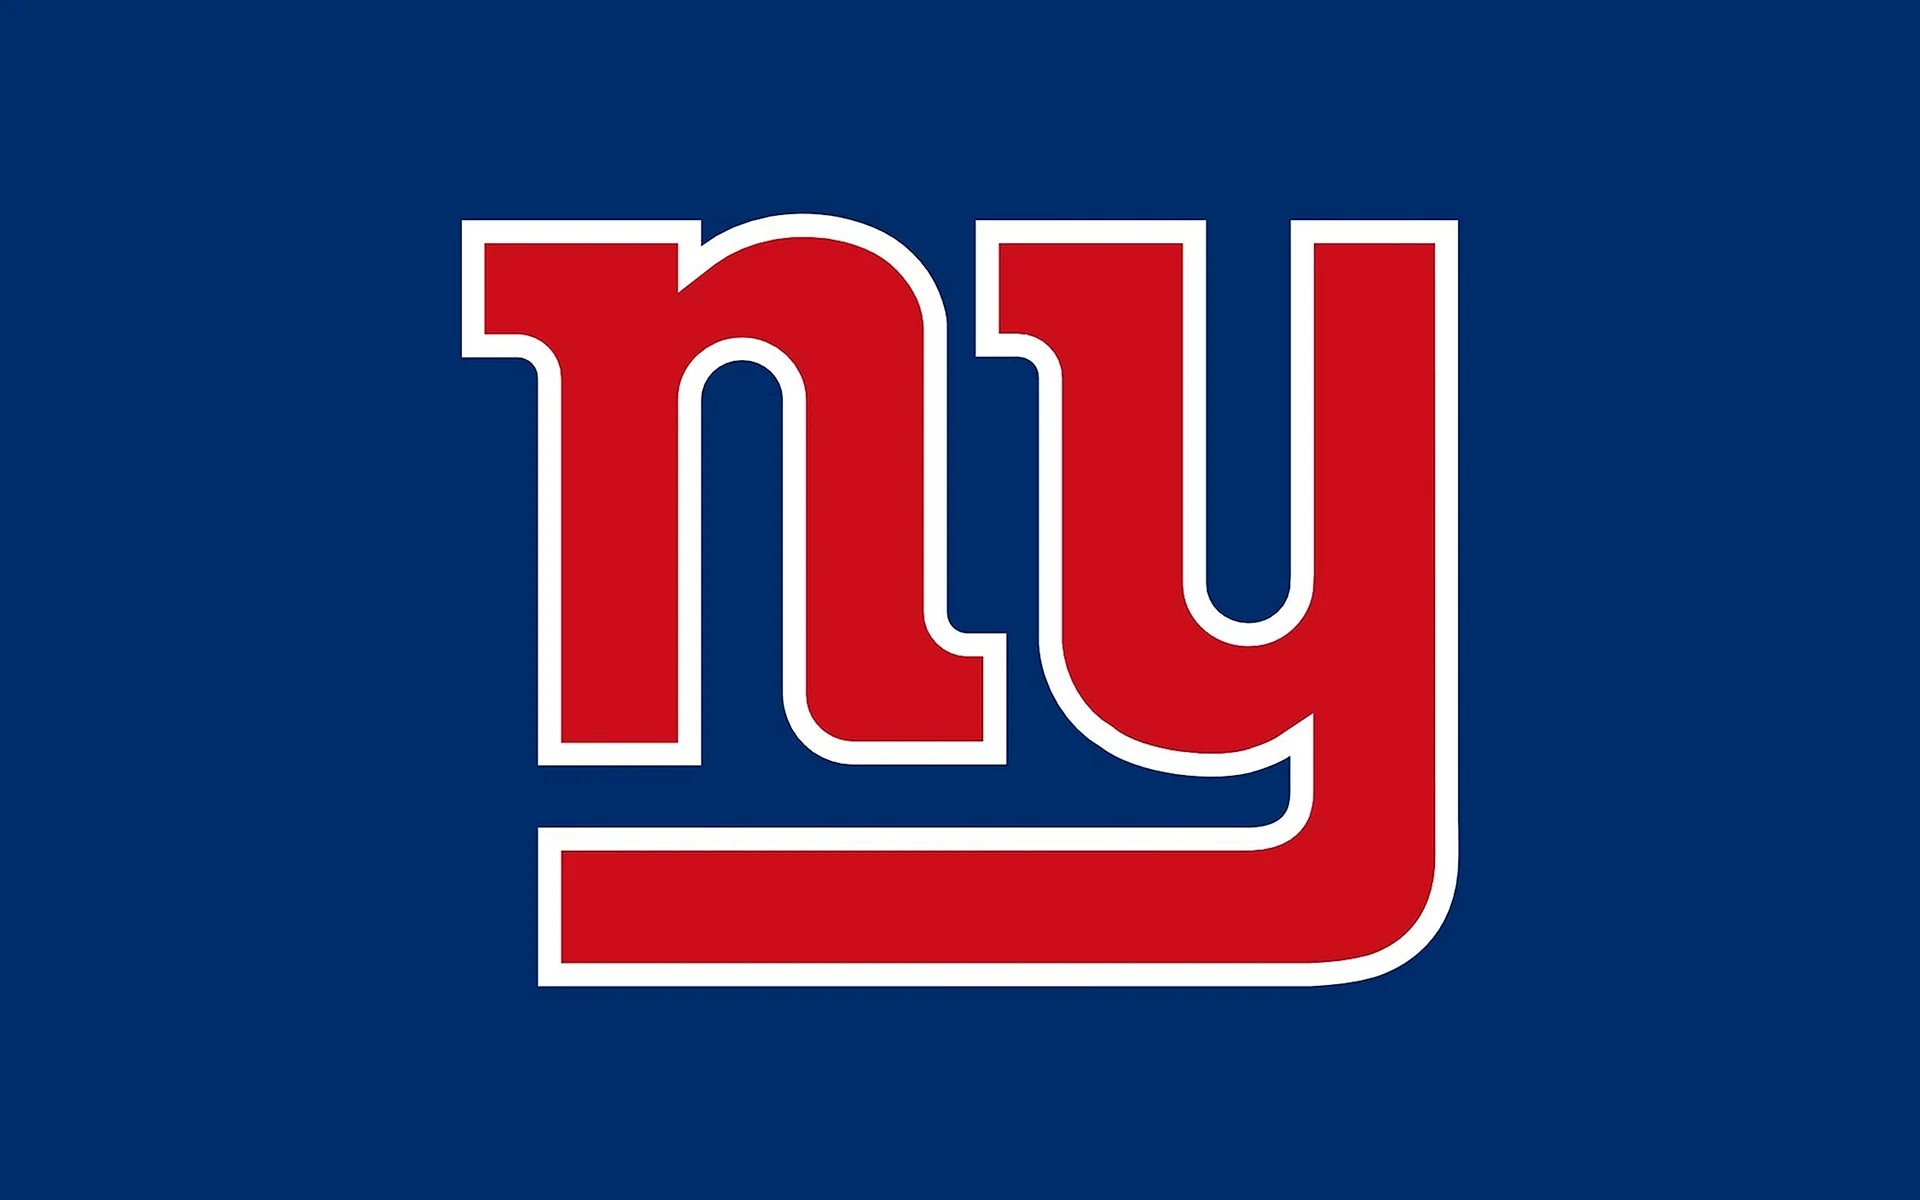 New York Giants Logo Wallpaper